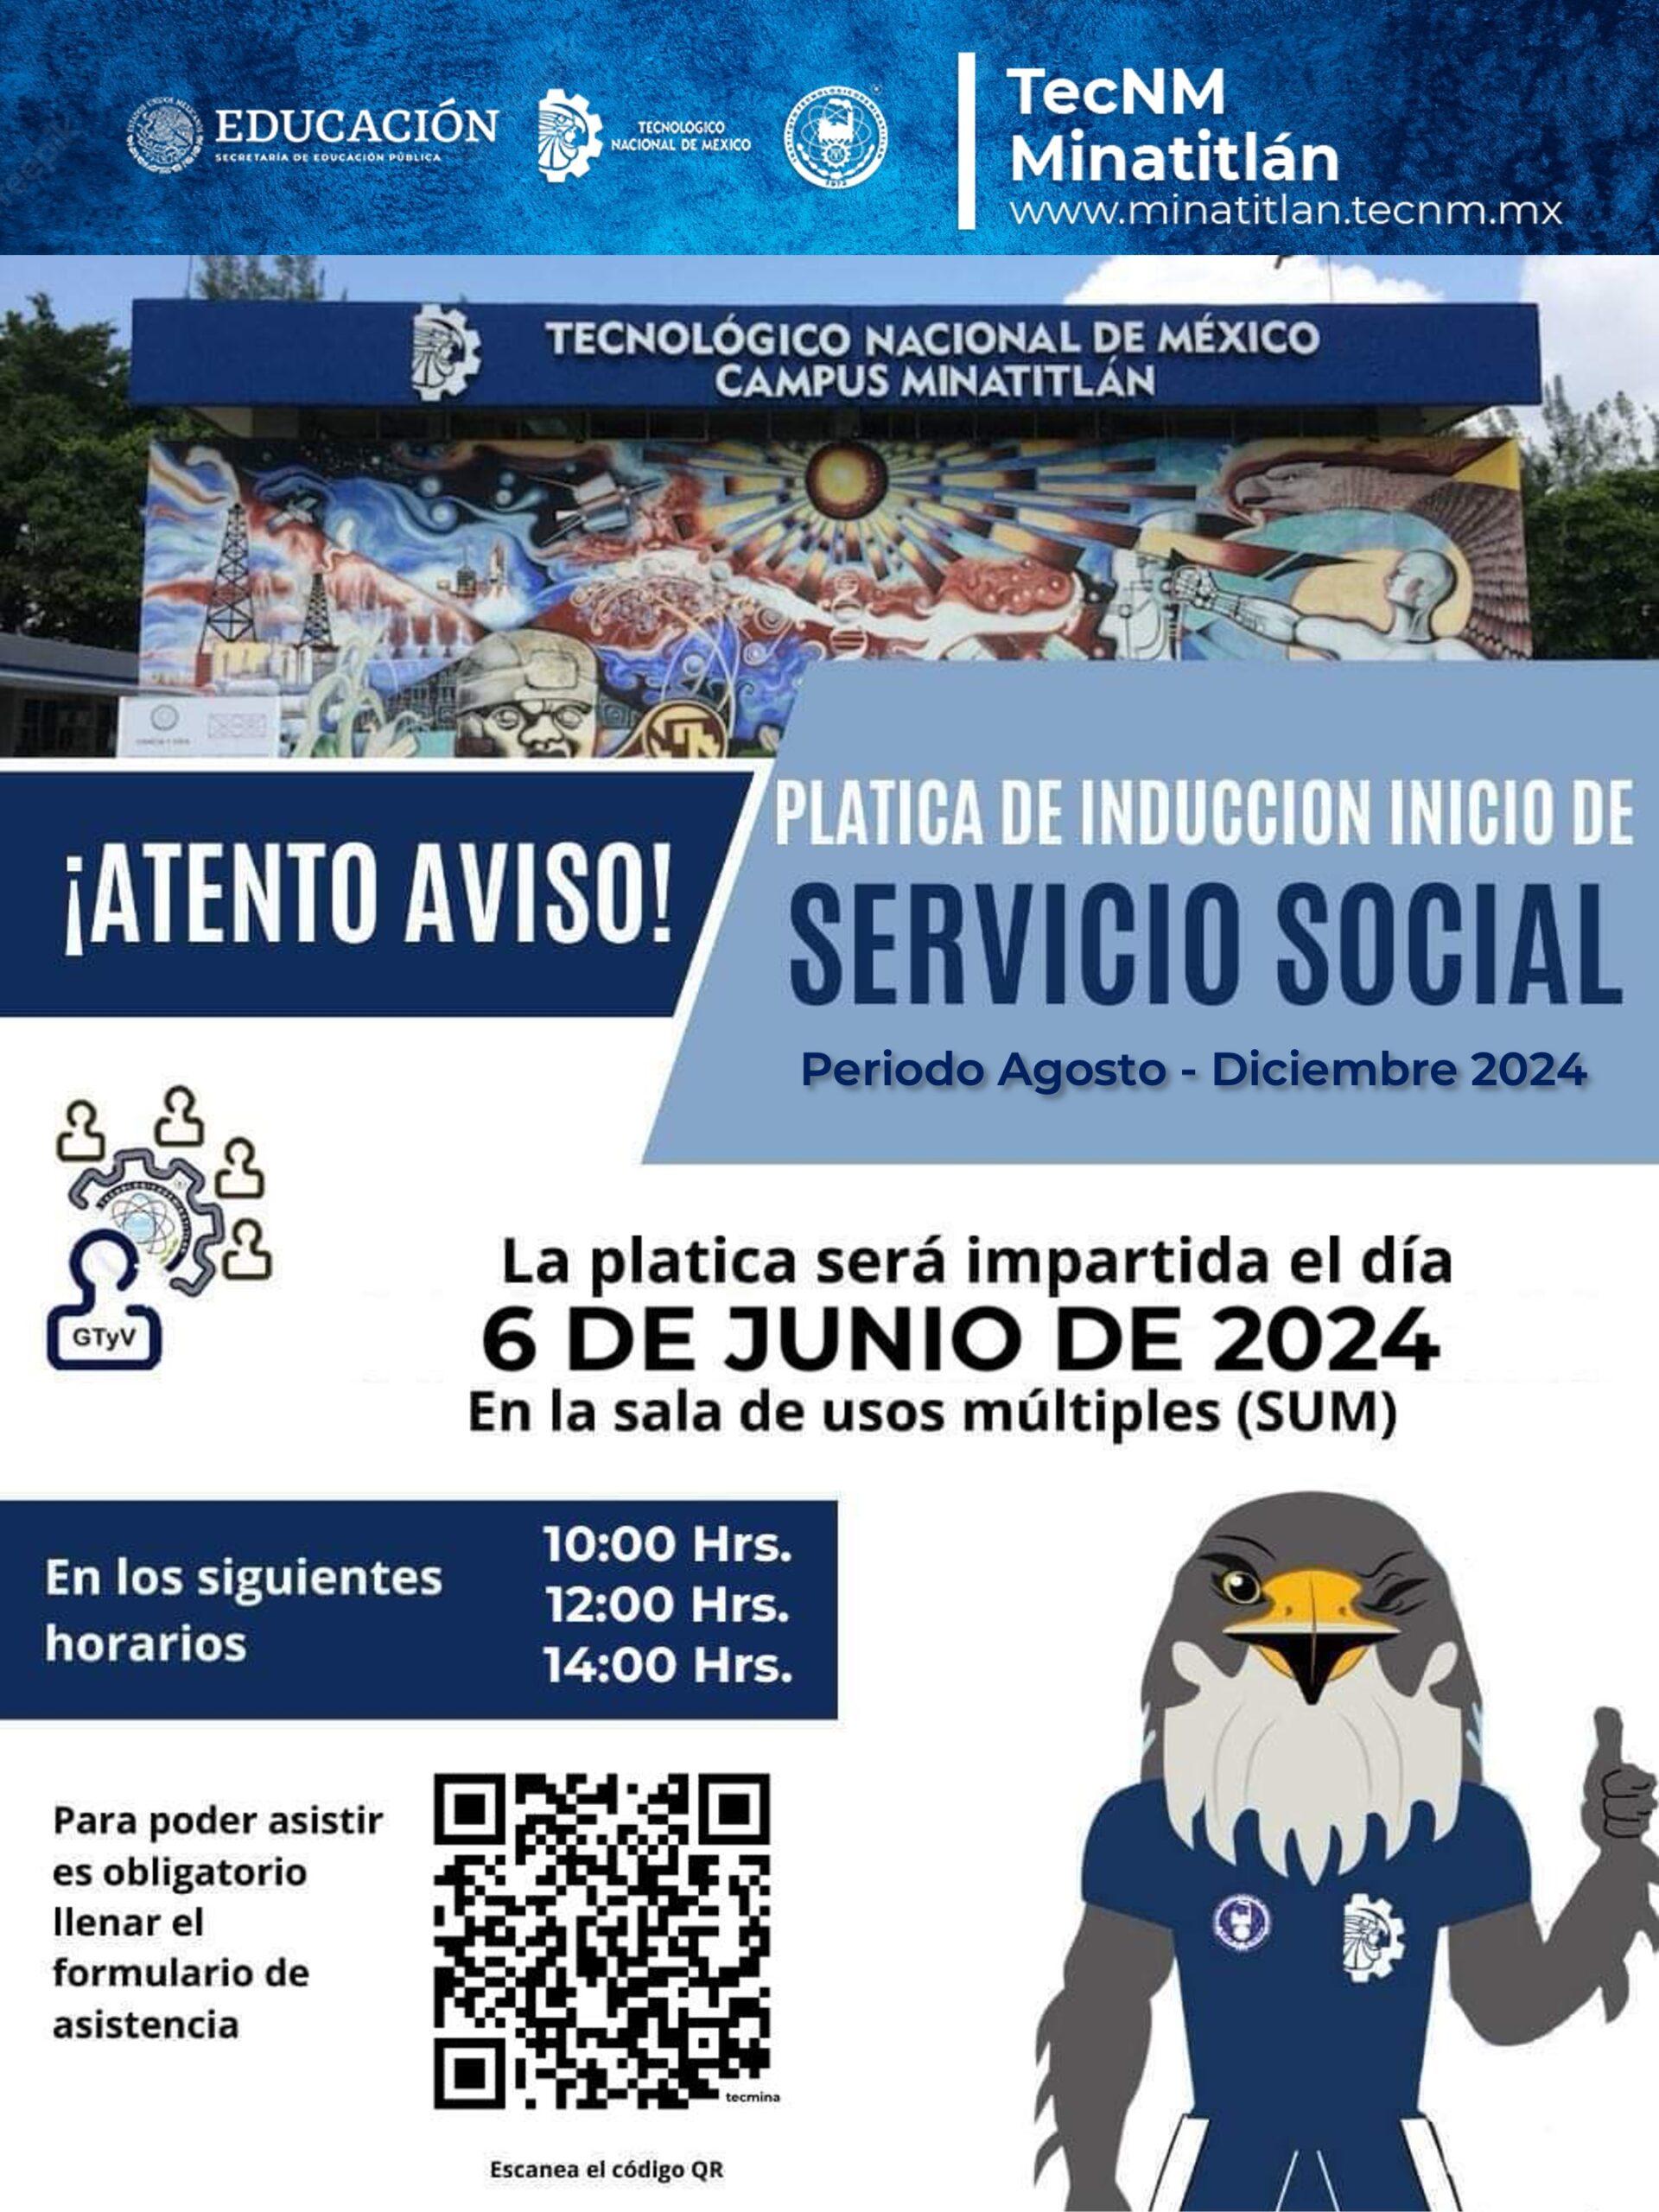 PLÁTICA DE INDUCCIÓN DE SERVICIO SOCIAL (PERIODO AGOSTO – DICIEMBRE 2024)